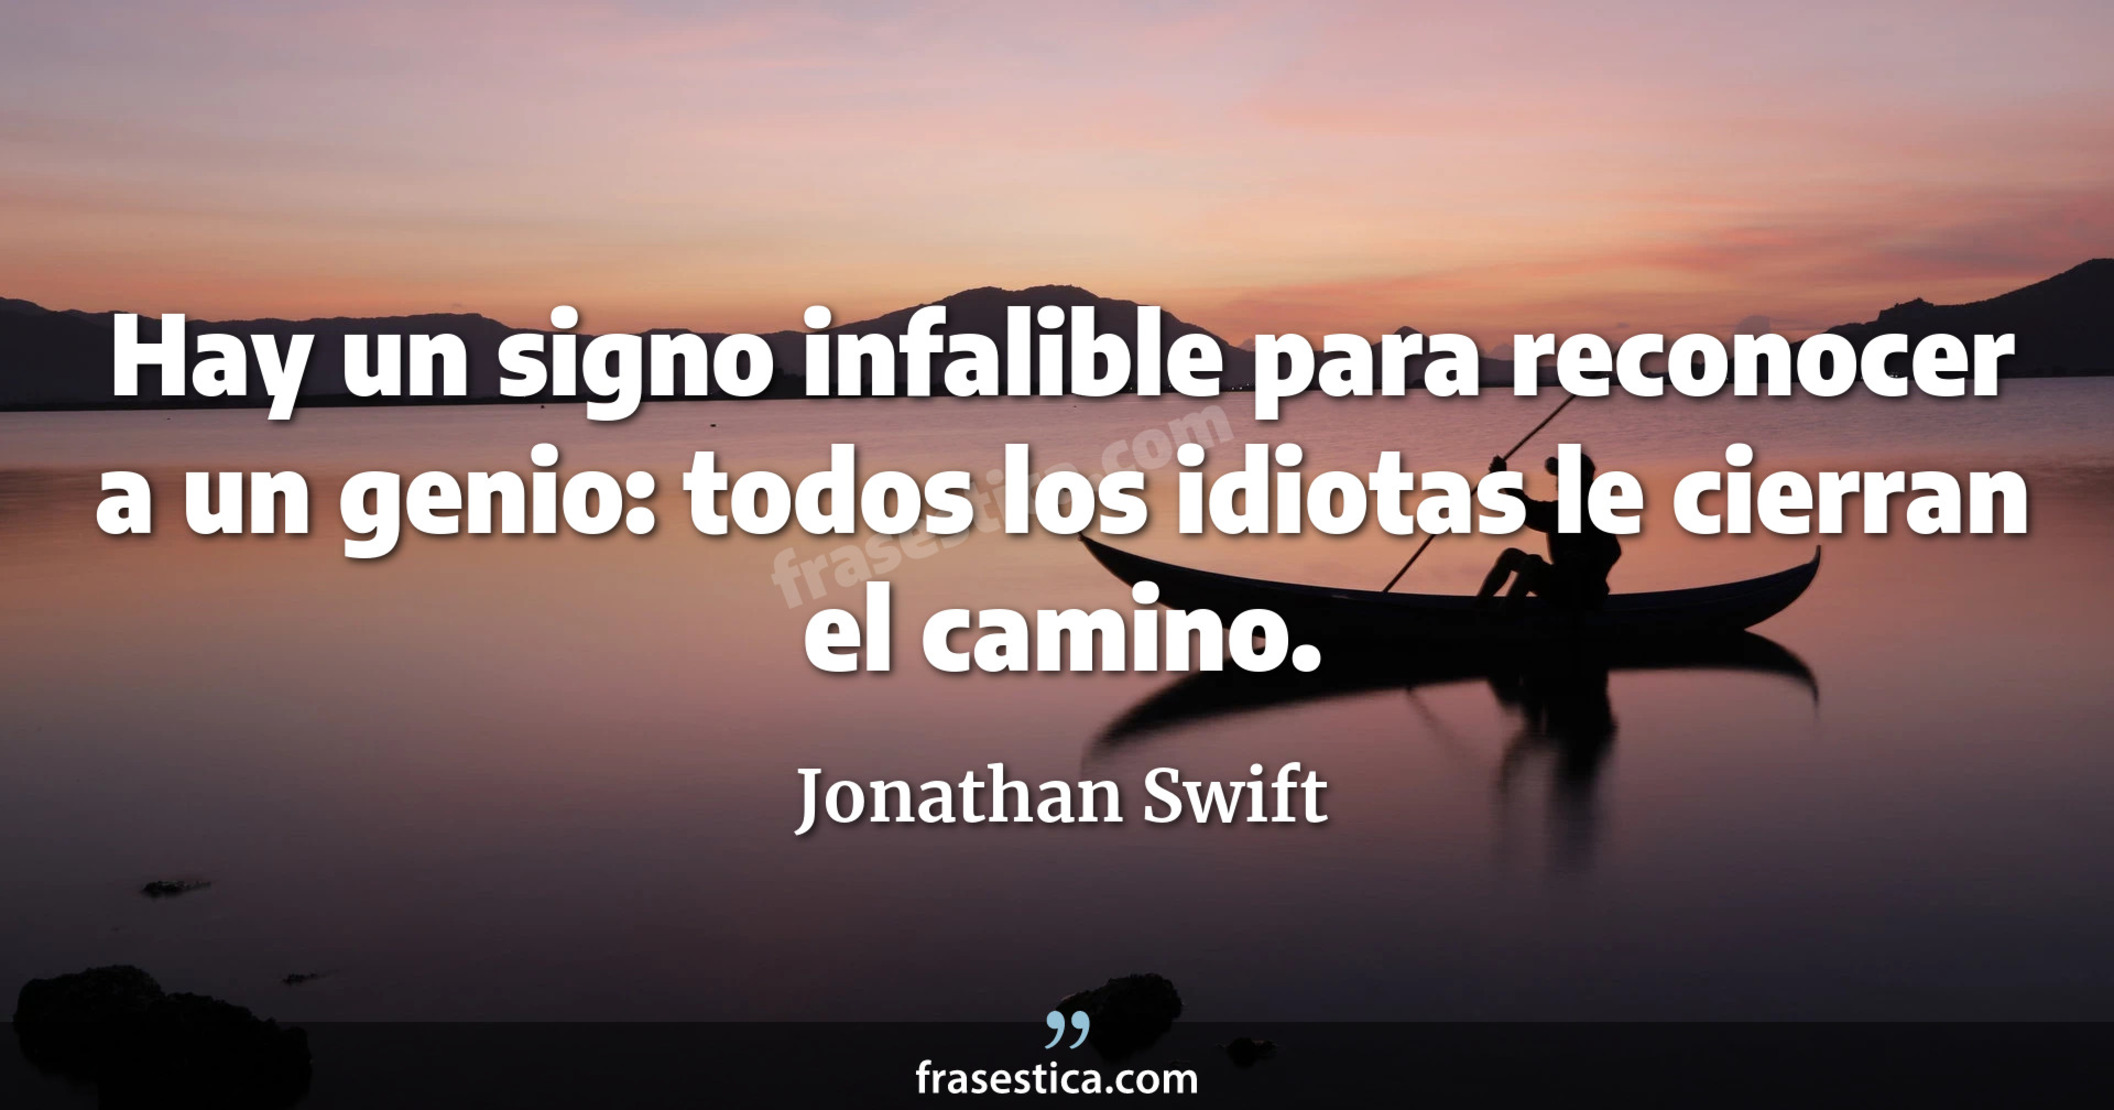 Hay un signo infalible para reconocer a un genio: todos los idiotas le cierran el camino. - Jonathan Swift